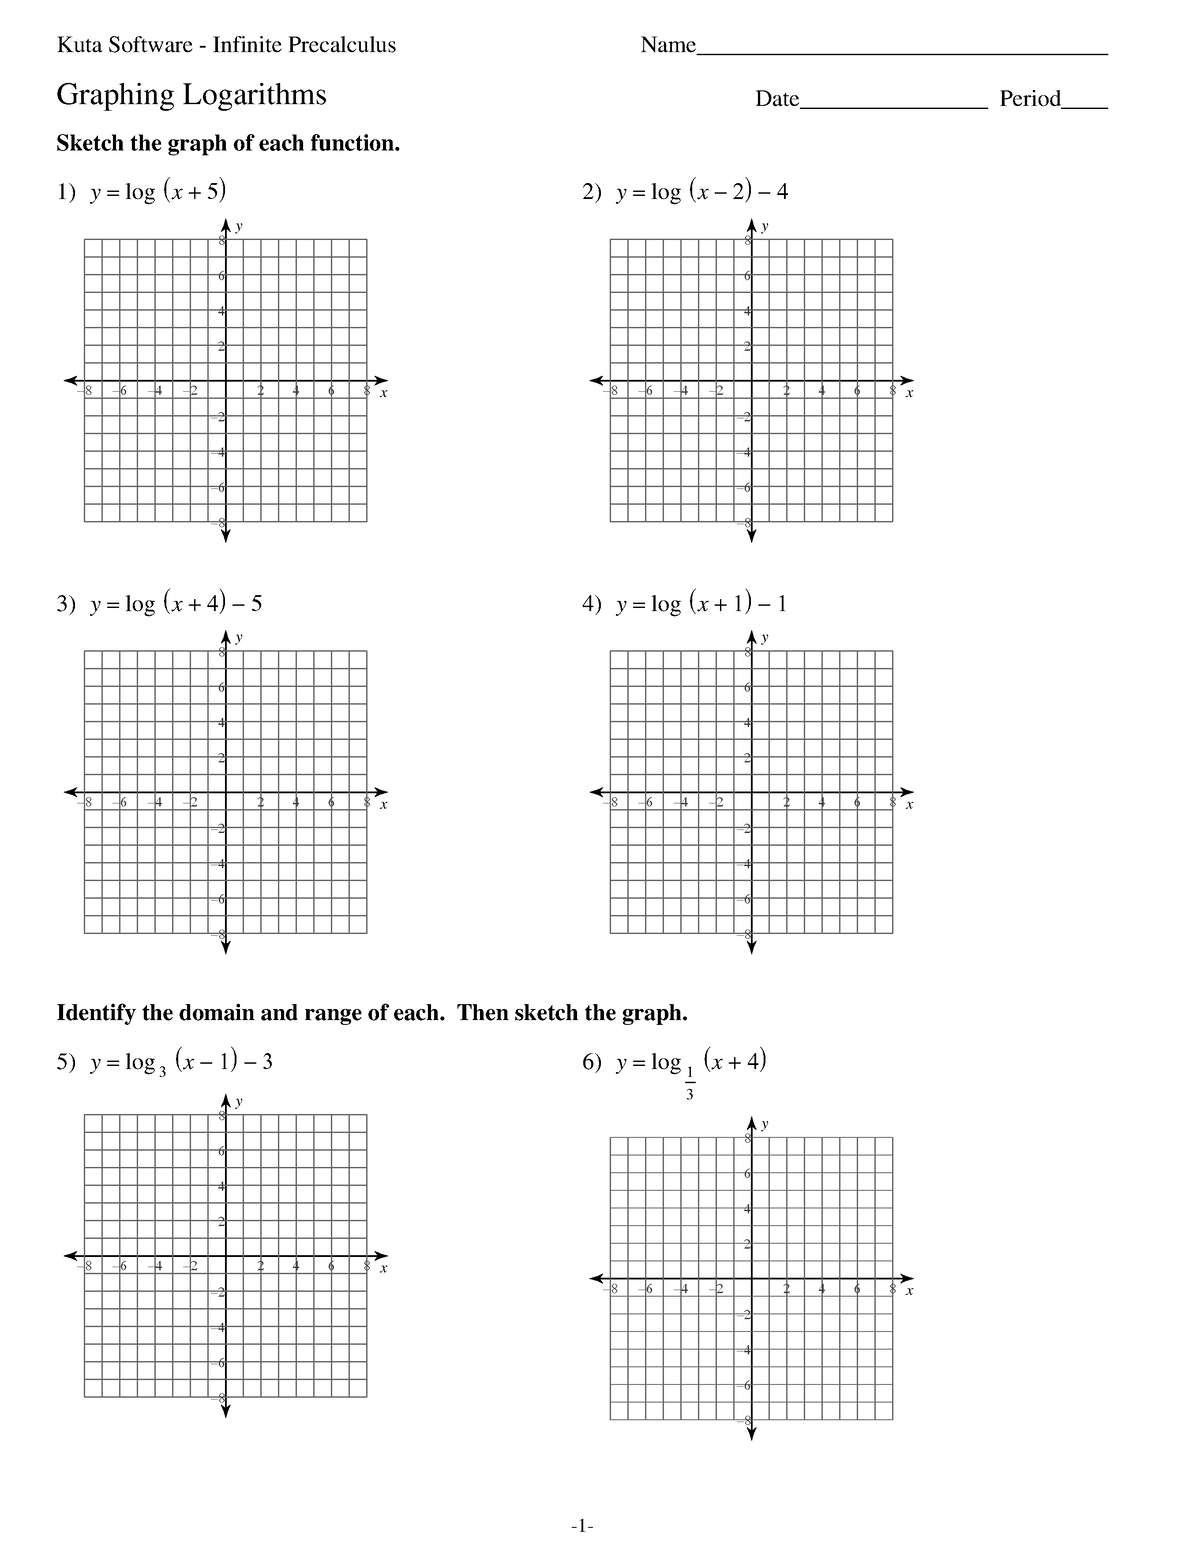 03 - Graphing Logarithms - ©a D 2 A 0 z 1 P 6 H EKfuwtVaO CSKocfKt ...